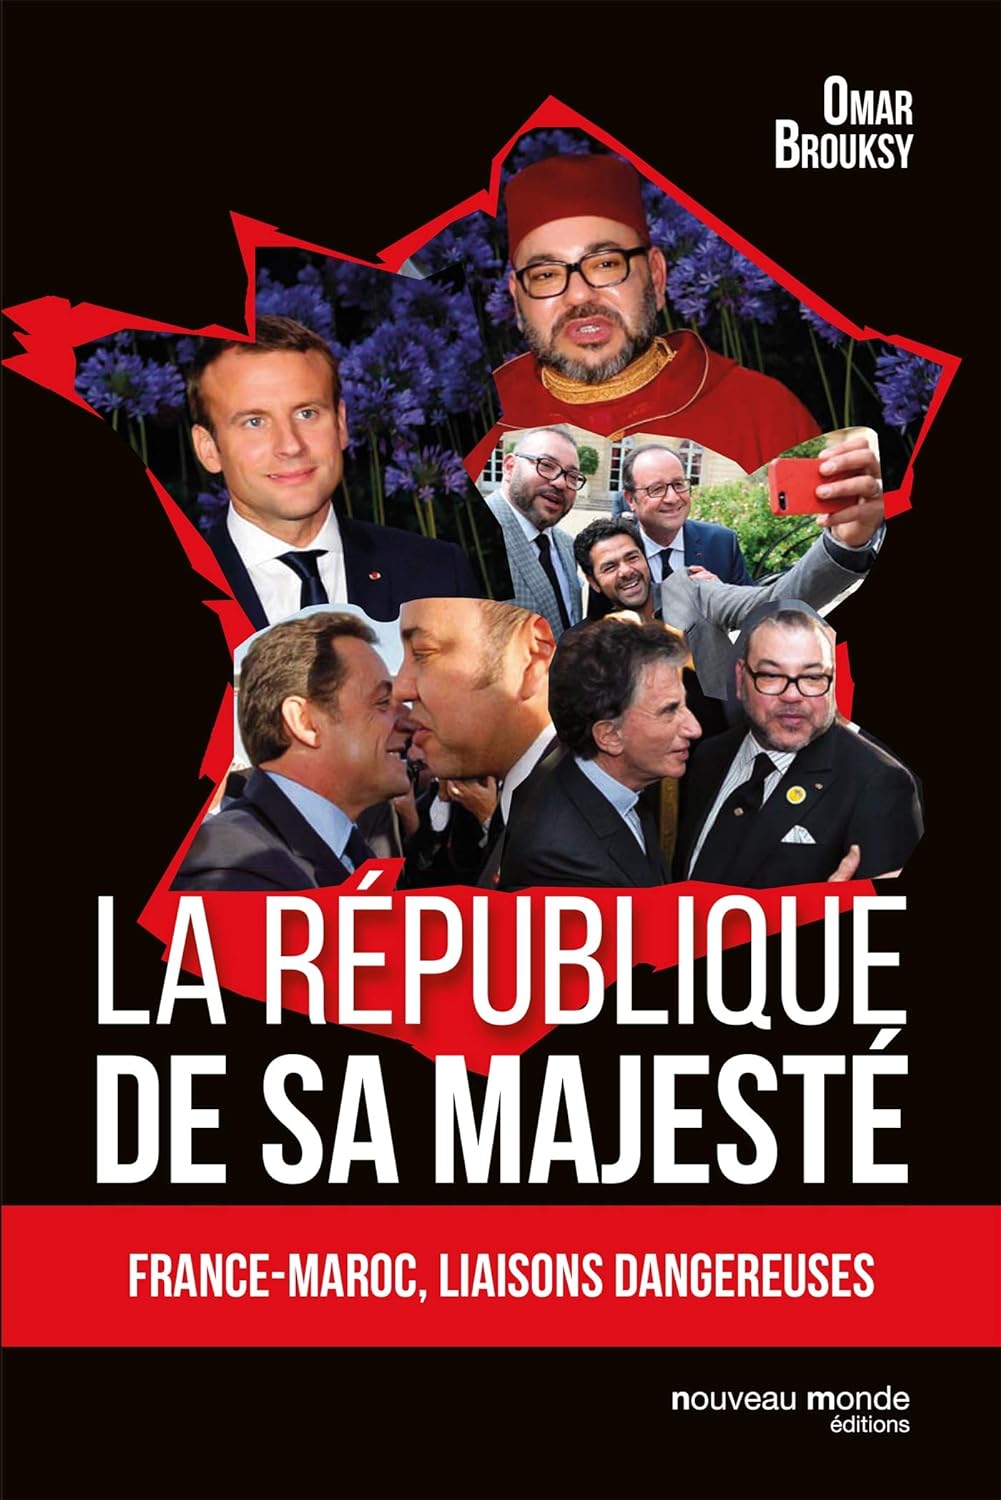 Omar Brouksy: La république de Sa Majesté (Français language, 2017, Nouveau Monde Editions)